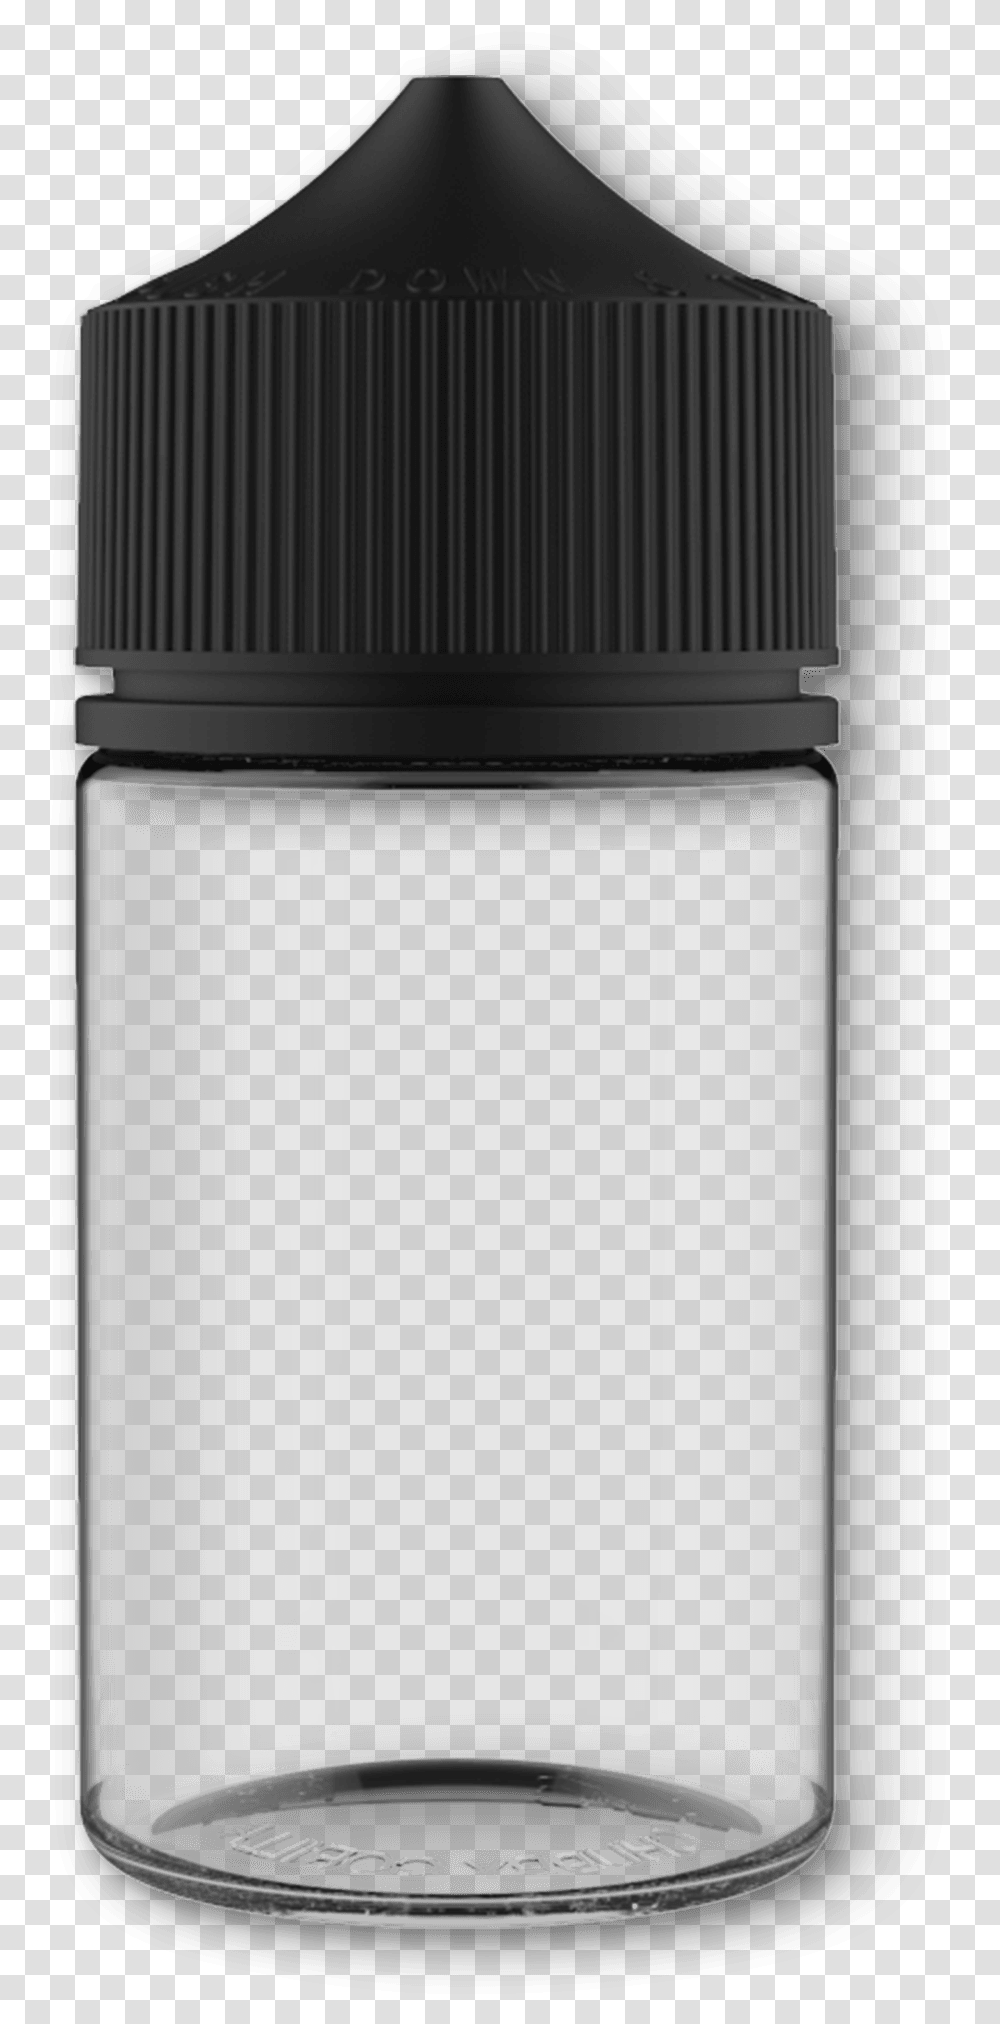 Chubby Gorilla Bottle, Jar, Cylinder Transparent Png